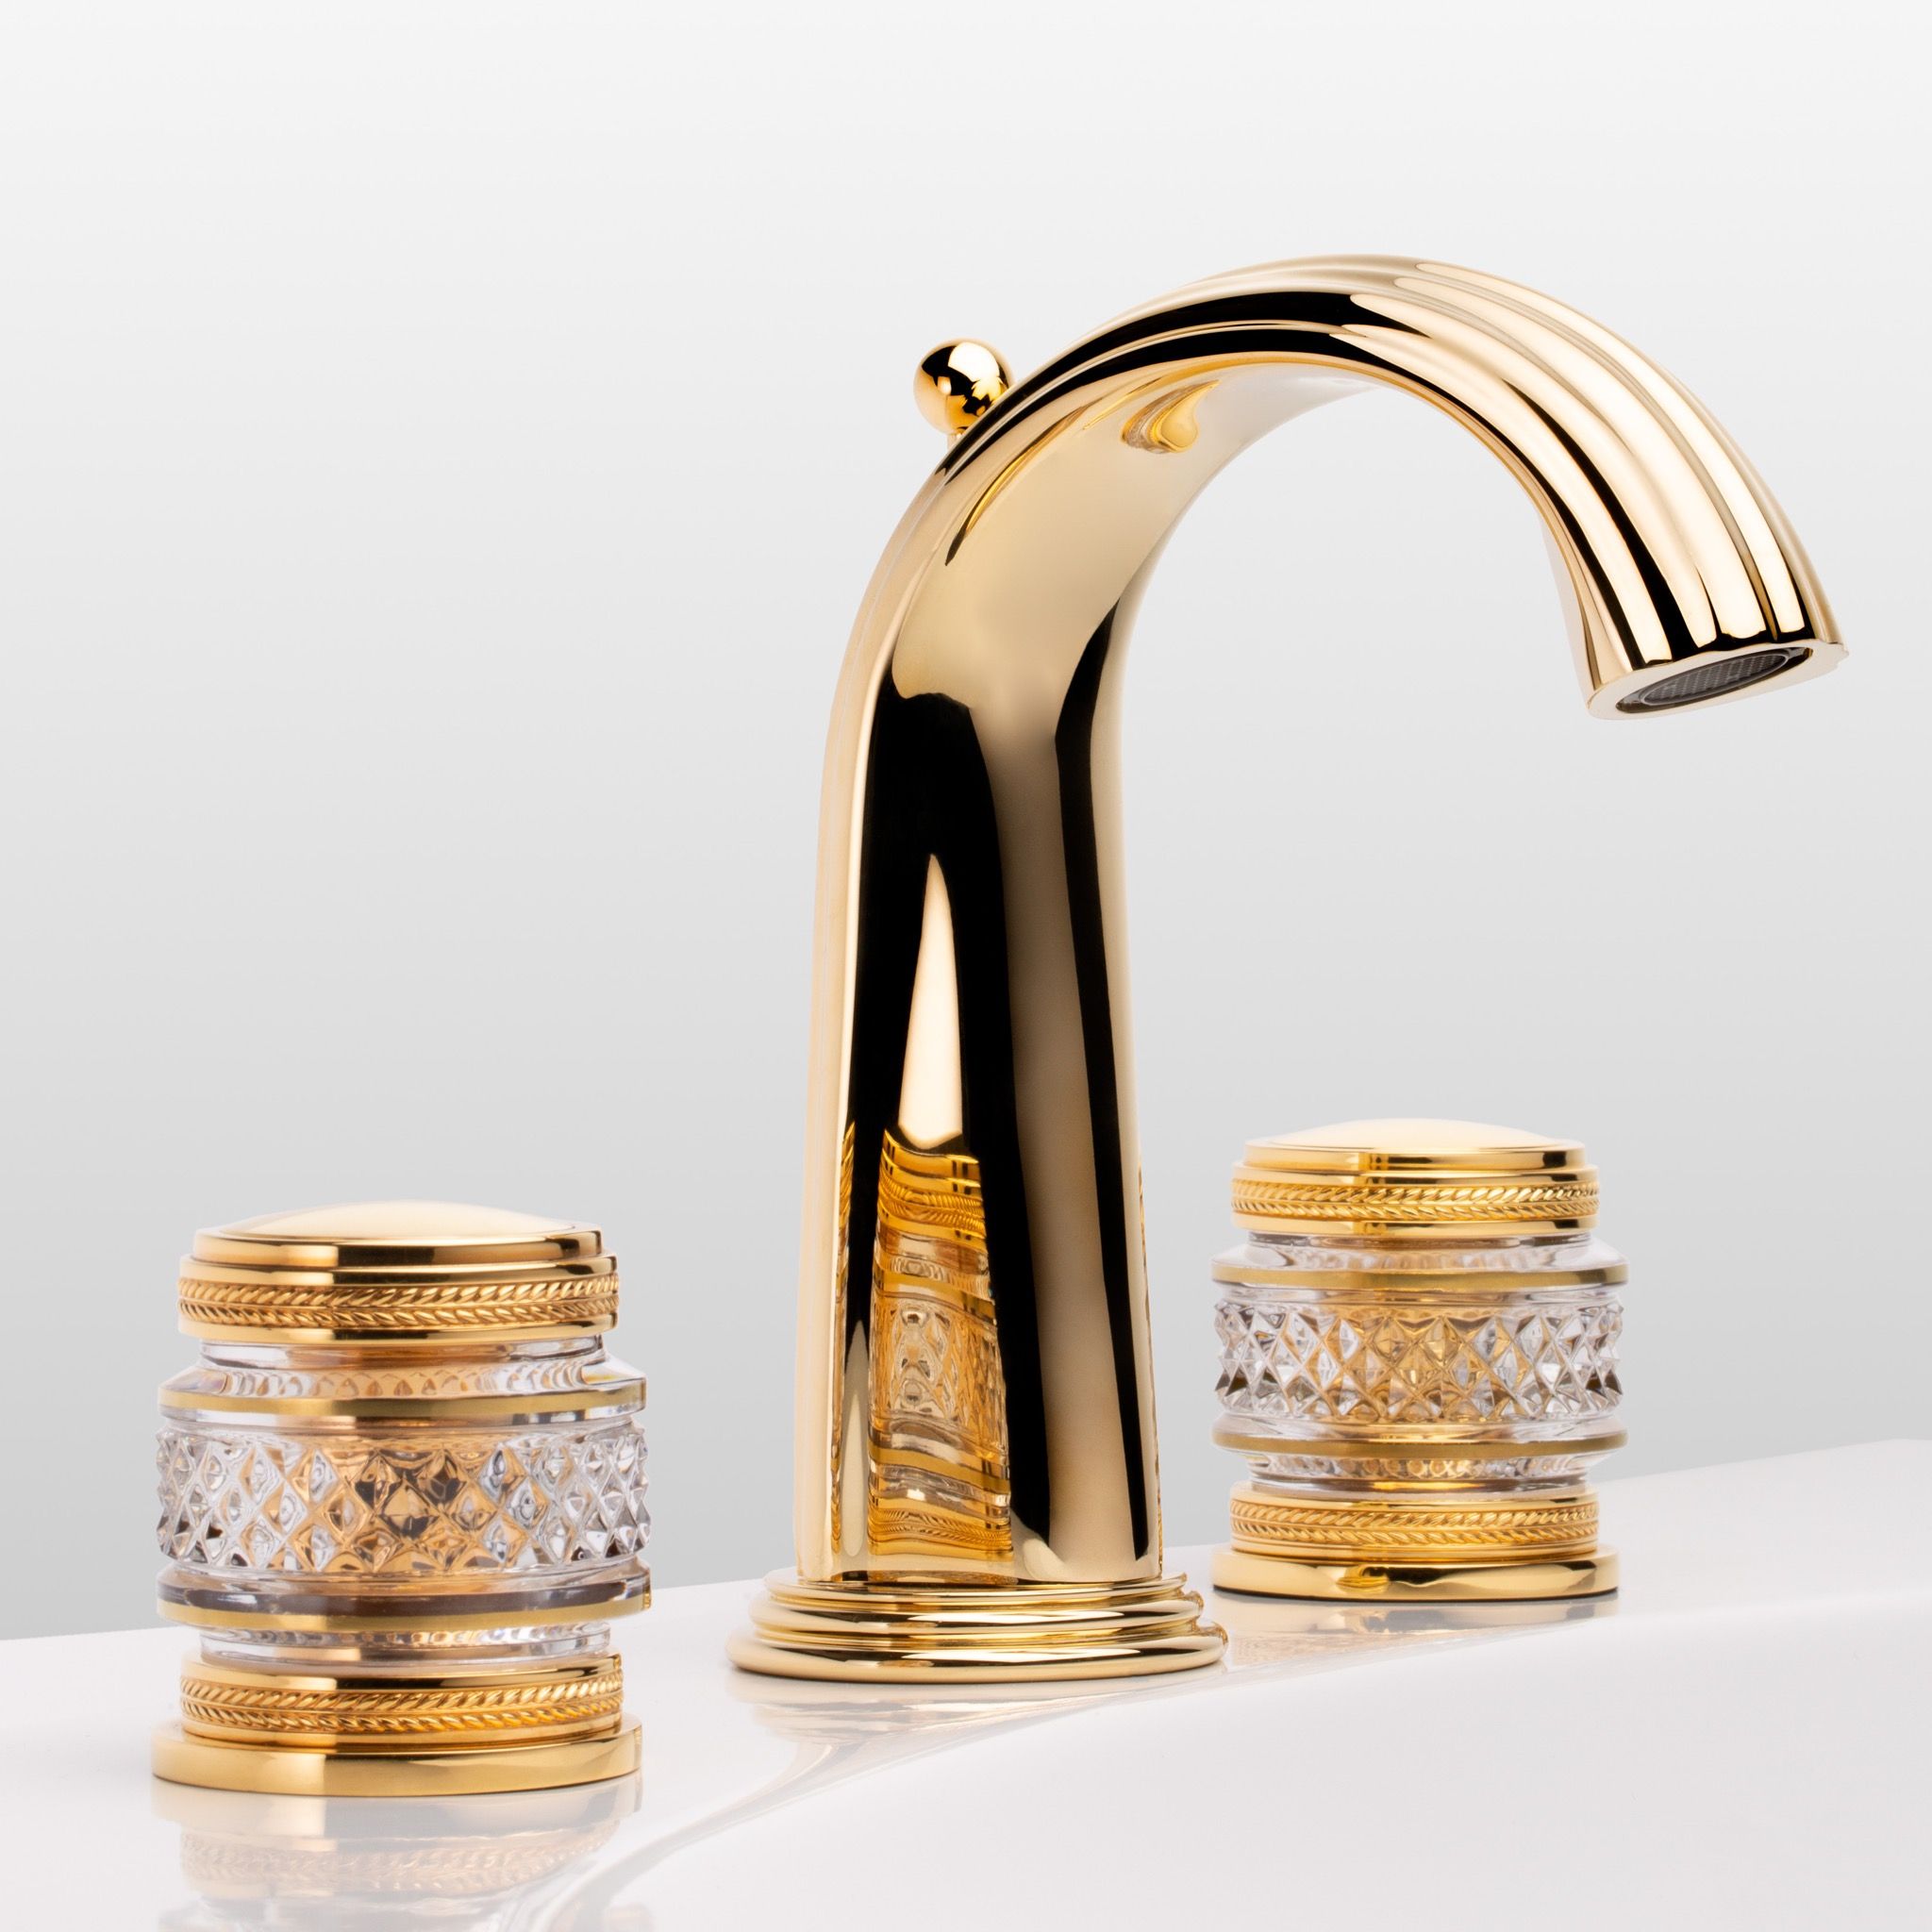  Vòi chậu rửa mặt cổ điển Quadrille Prestige polished gold bằng đồng - 1301 